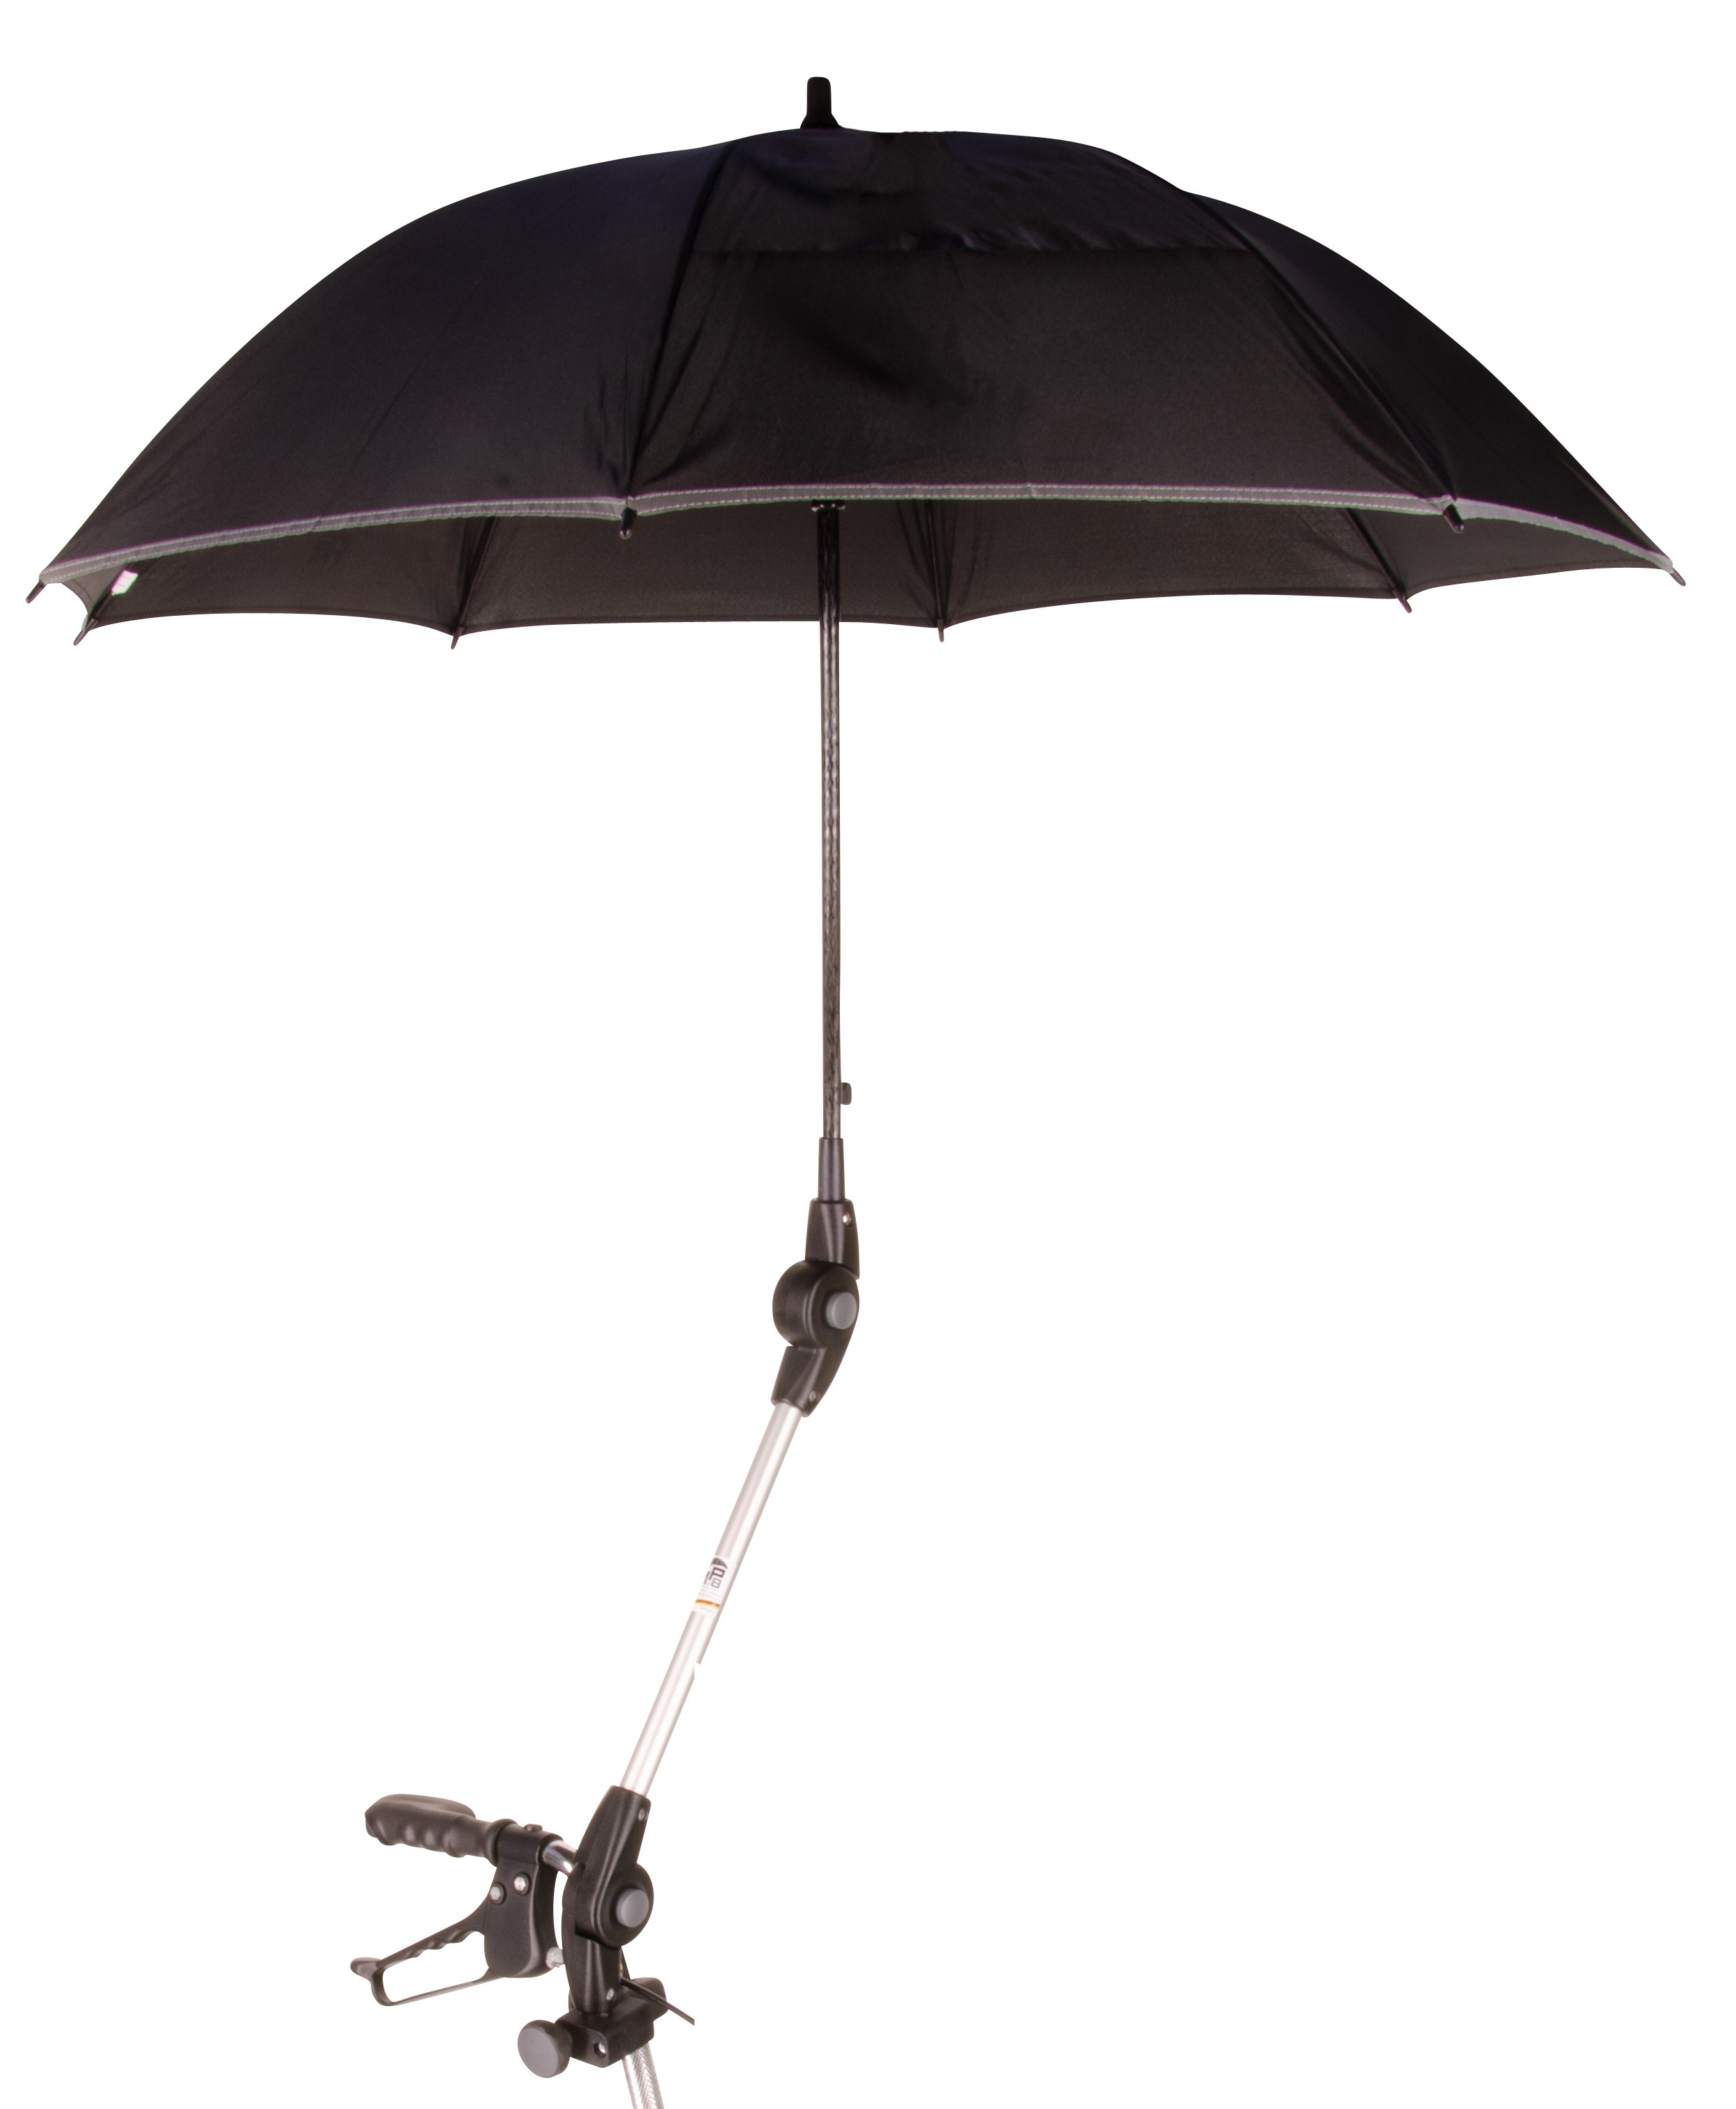 Regenschirm für Rehasense Rollator